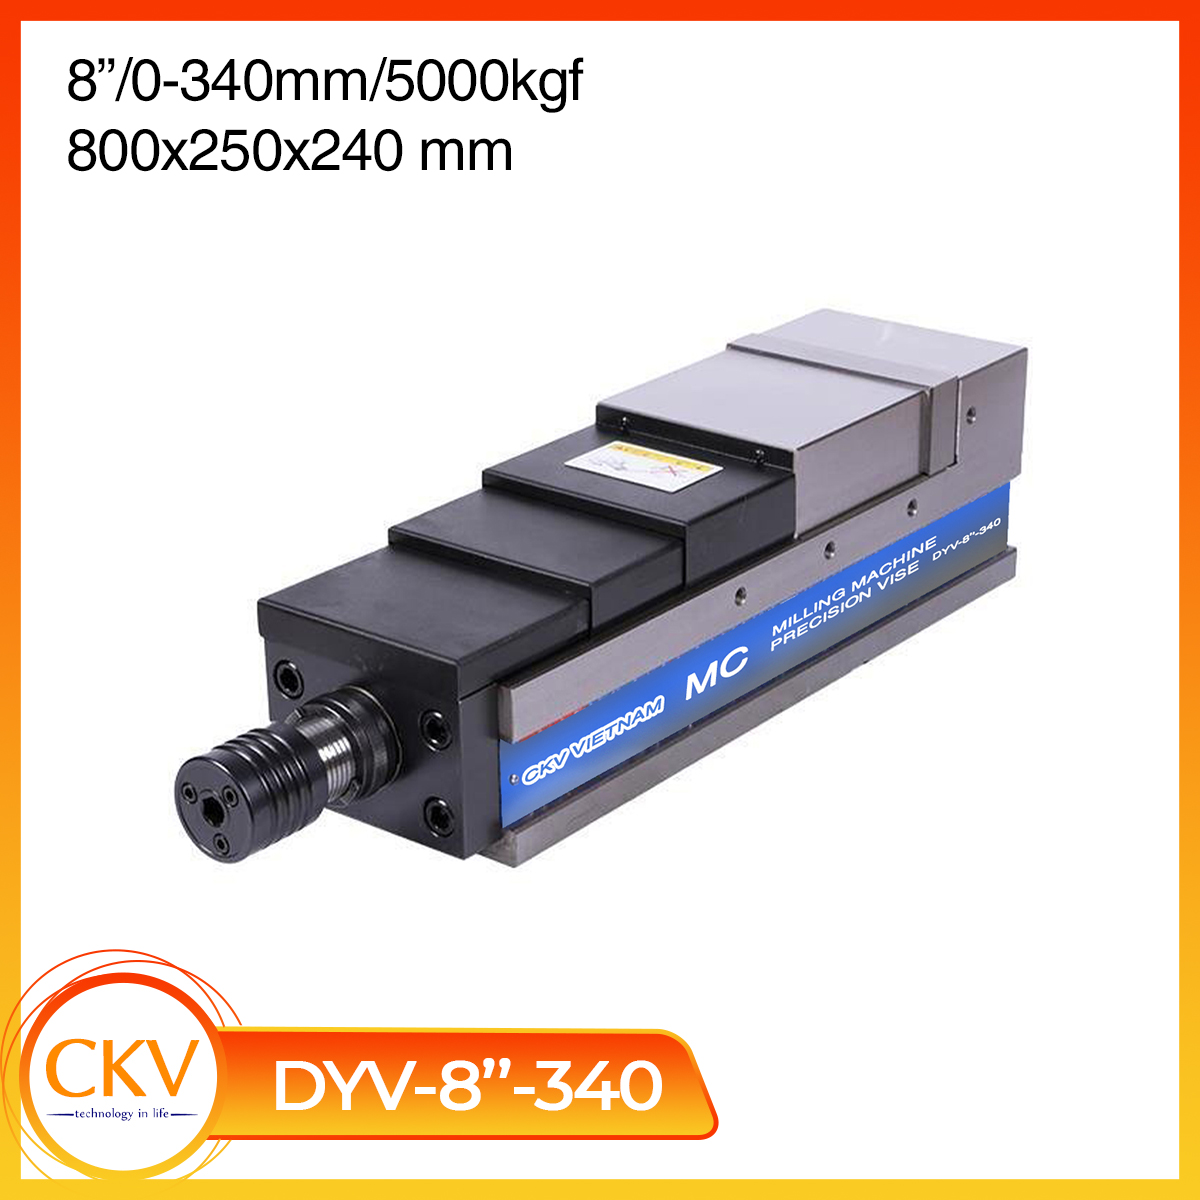 DYV-8"-340 cho phép mở hàm kẹp phôi 340mm